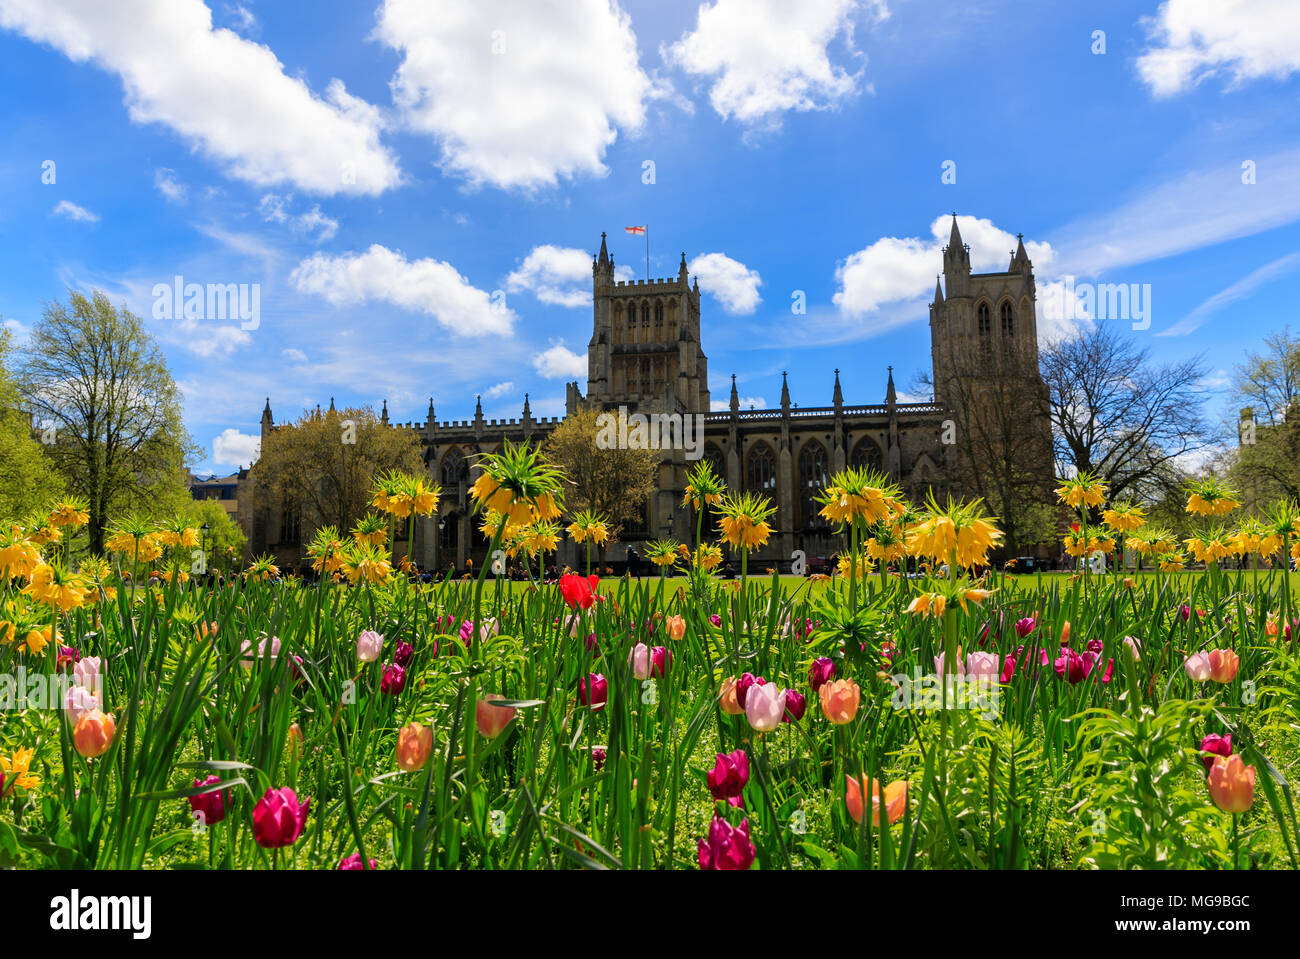 Für den Frühling vor der Kathedrale von Bristol. Blumen im Vordergrund edie Kathedrale in den Boden zurück. Blauer Himmel mit flauschigen weissen Wolken. Stockfoto